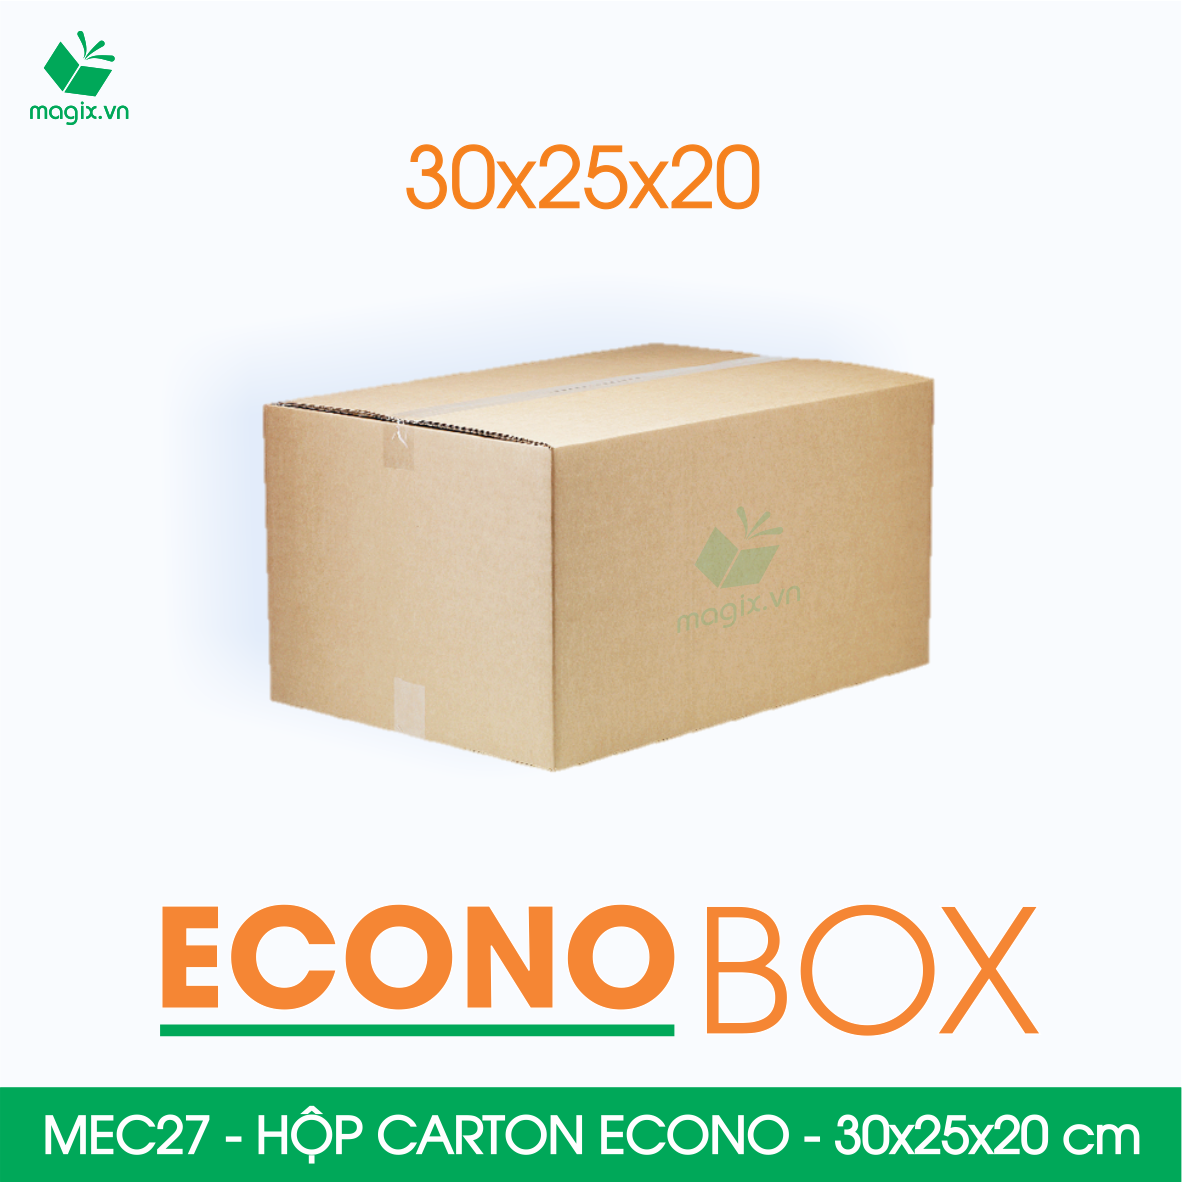 Hình ảnh MEC27 - 30x25x20 cm - Combo 60 thùng hộp carton trơn siêu tiết kiệm ECONO